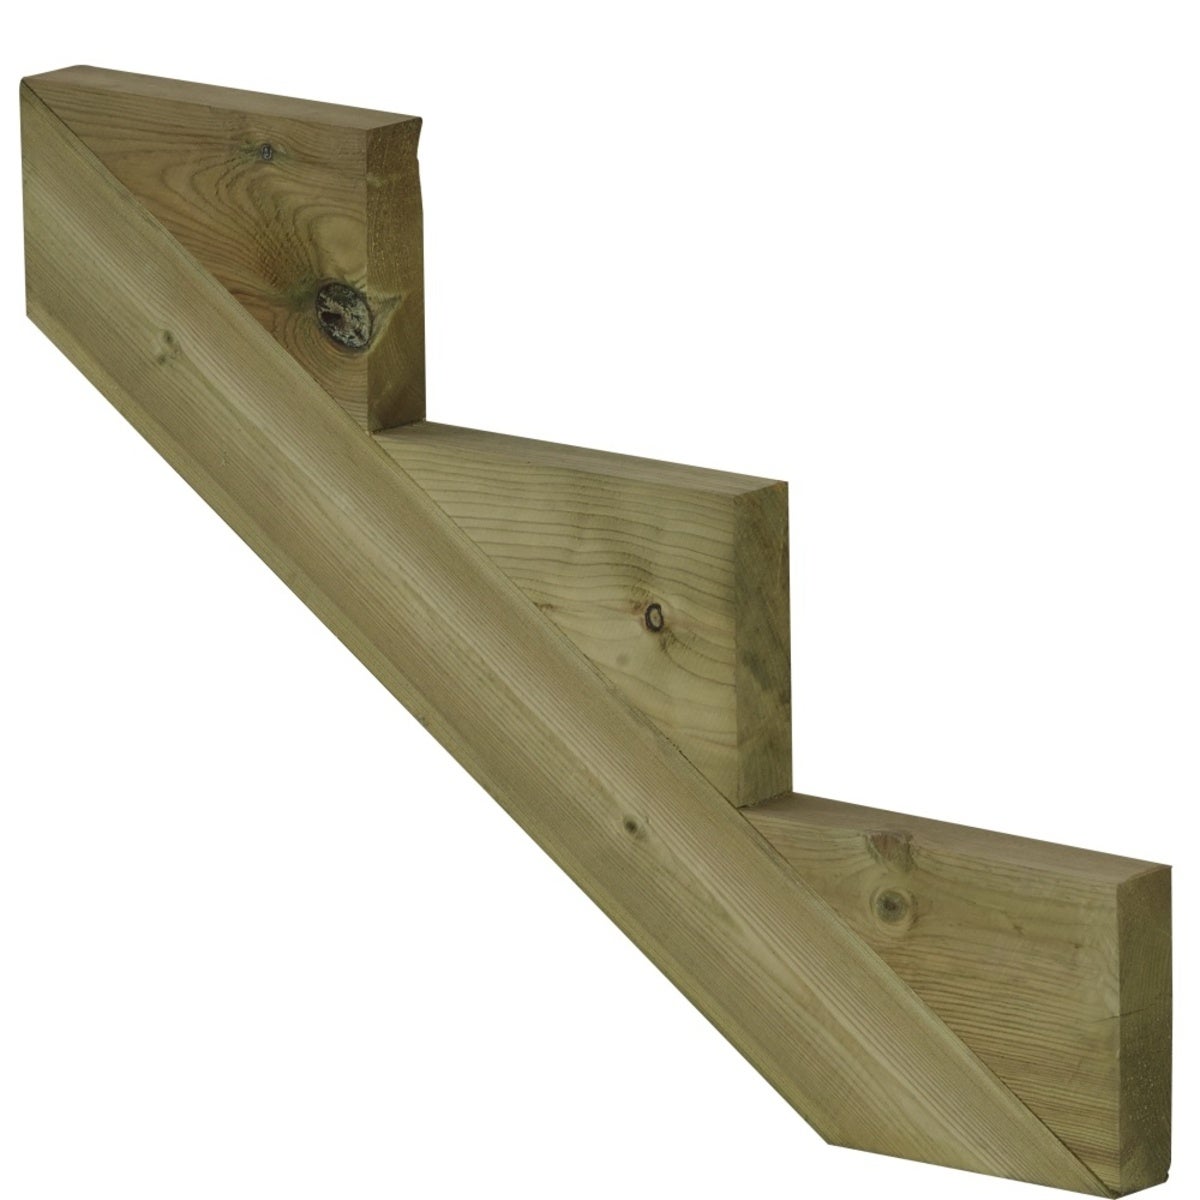 Treppenwange 3 Stufen aus KDI Holz für Gartentreppe, Außentreppe, Terrassentreppe n